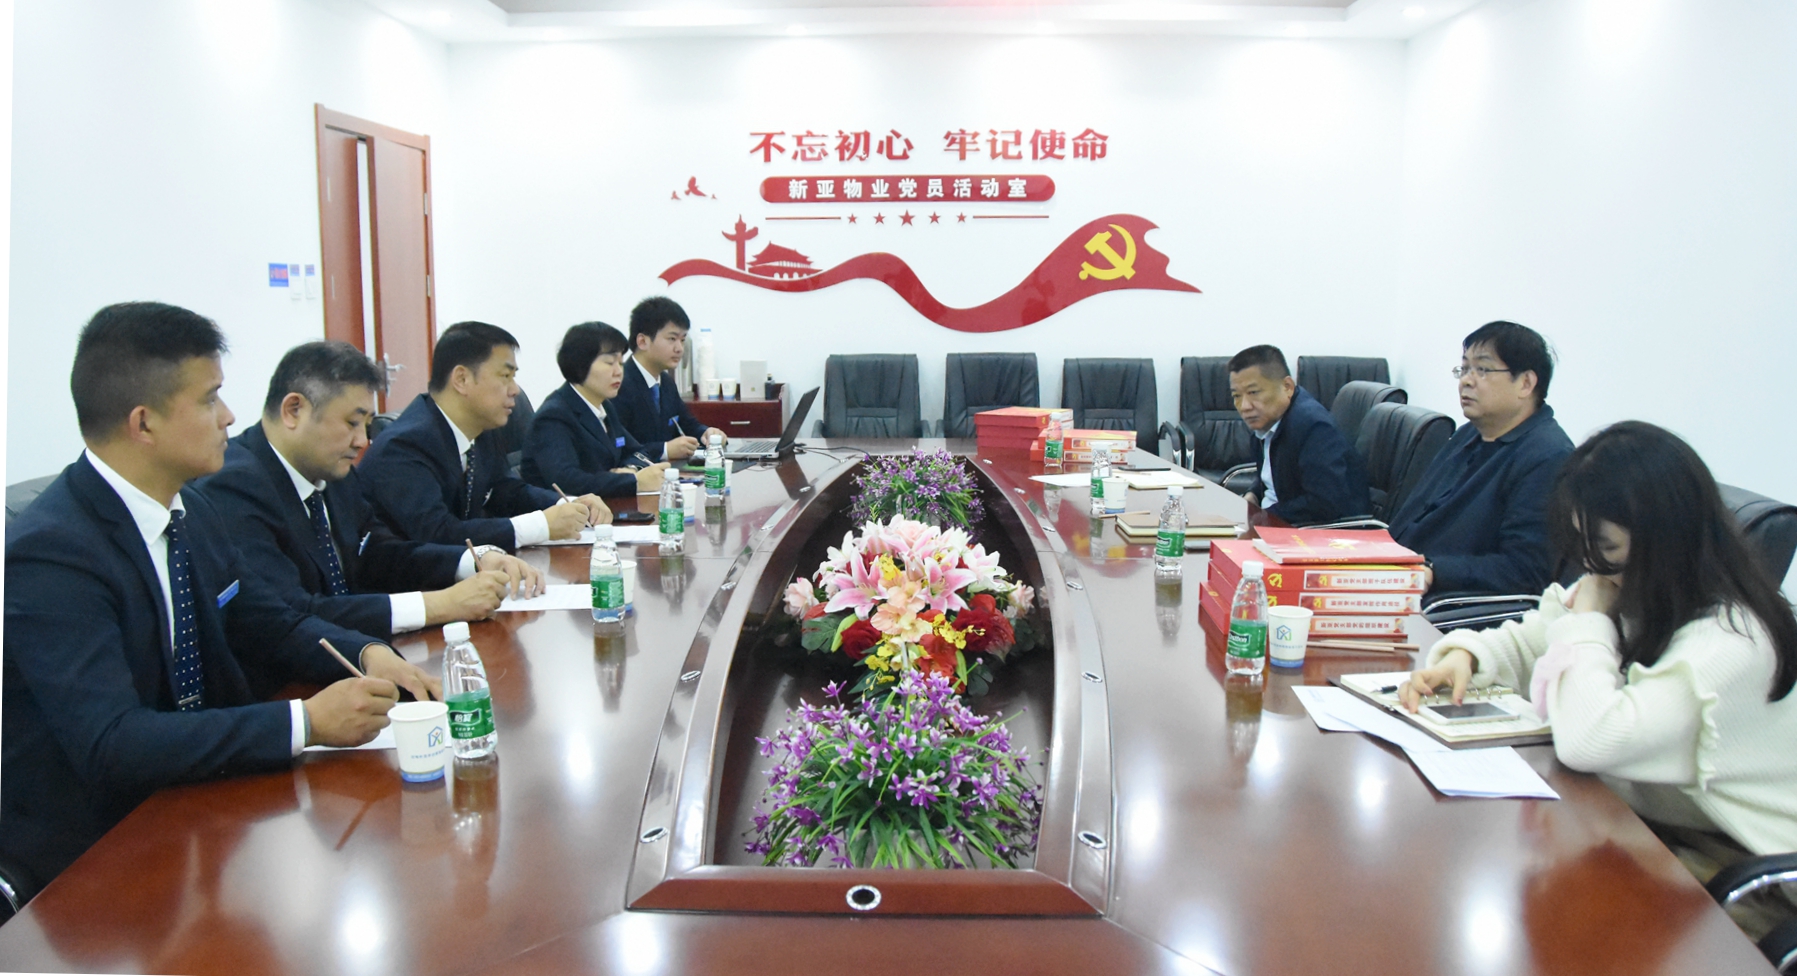 合肥市物業行業黨委的領導蒞臨新亞物業調研指導